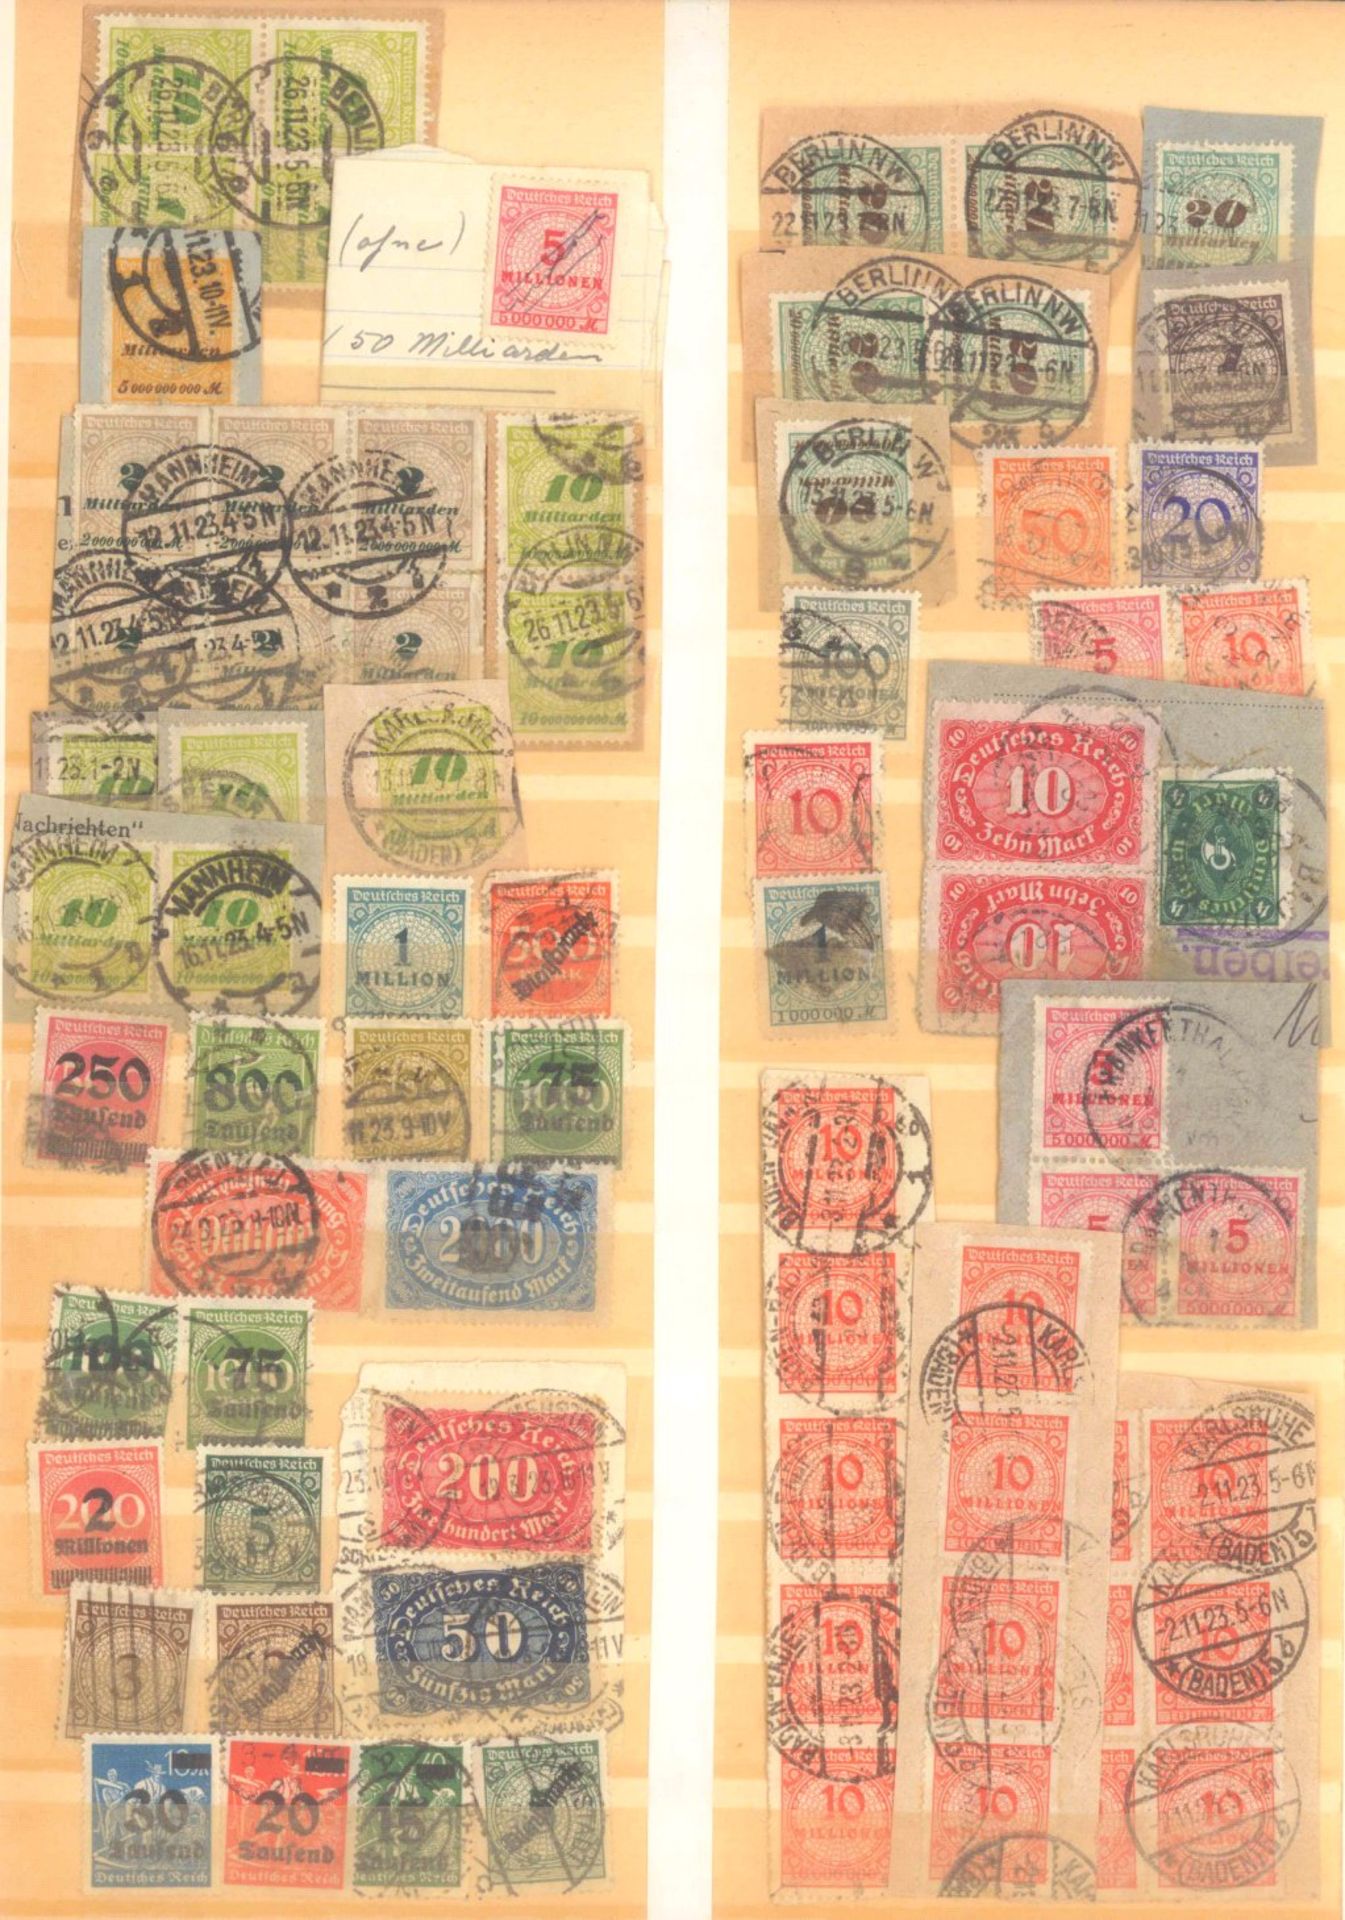 FRANKENTHALER NACHLASSuriger Nachlass mit Briefmarken und Belegen. Dabei DeutschesReich, altes - Bild 3 aus 46